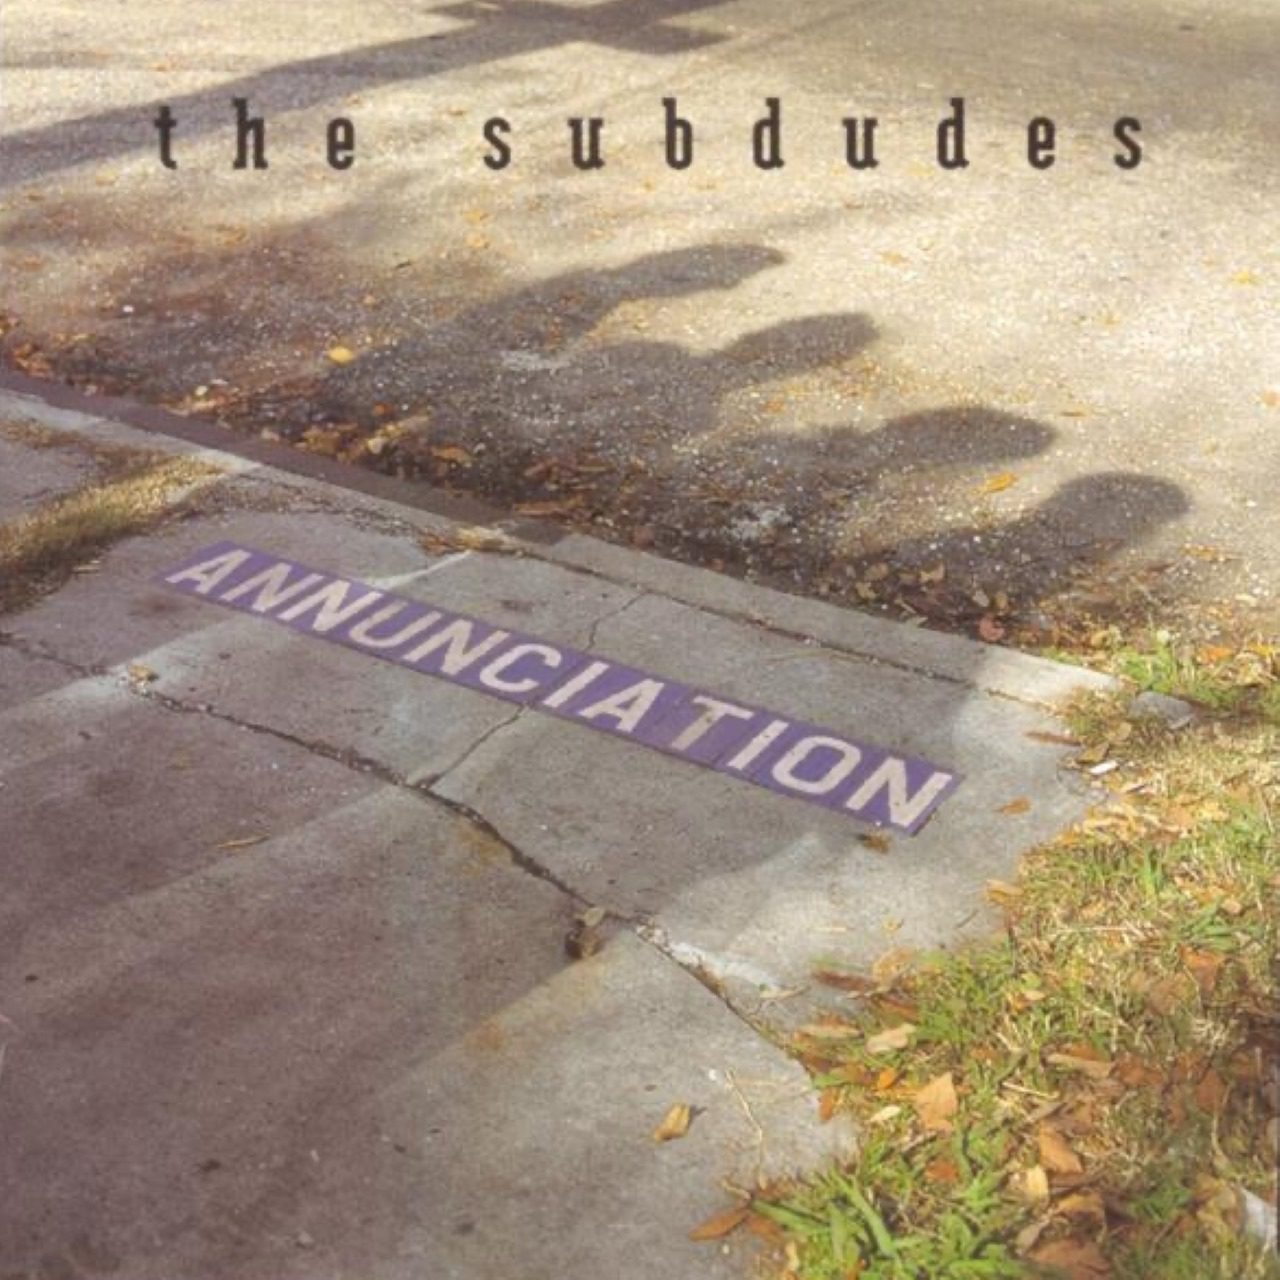 Subdudes – Annunciation cover album